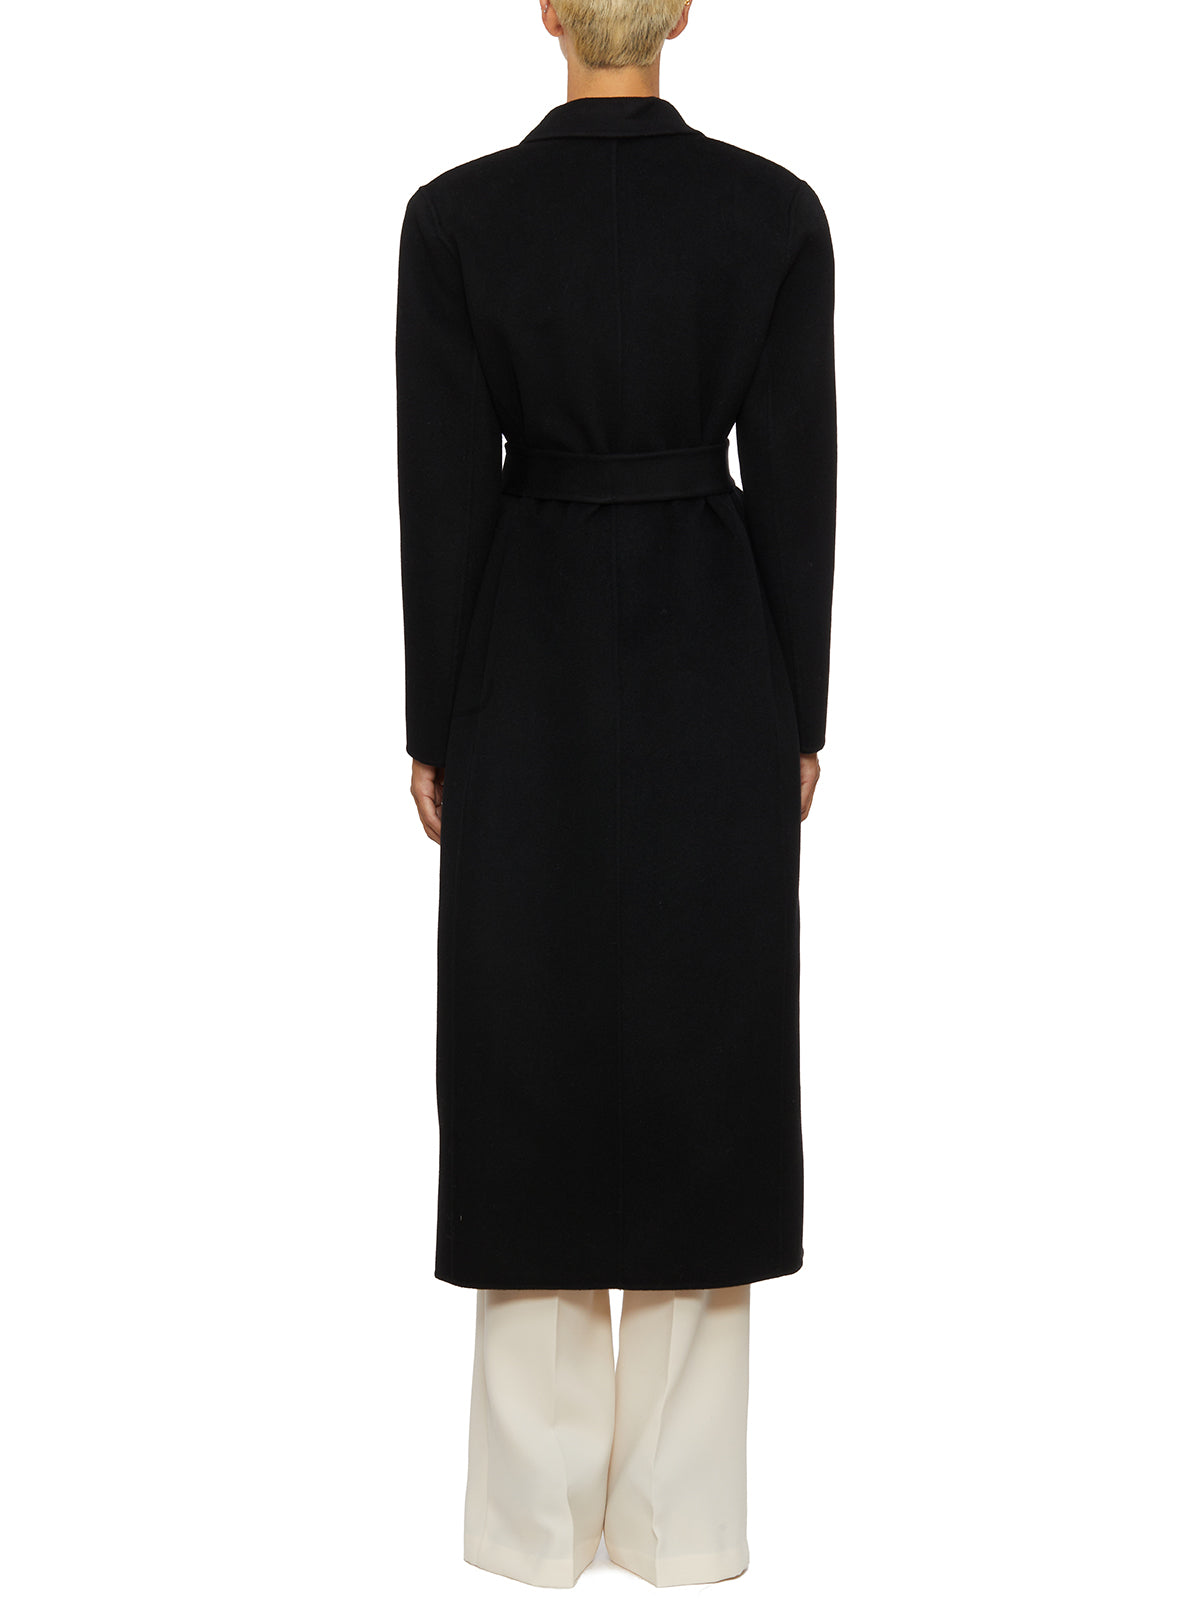 Áo khoác len đen Doppopetto cho phụ nữ - Bộ sưu tập FW23